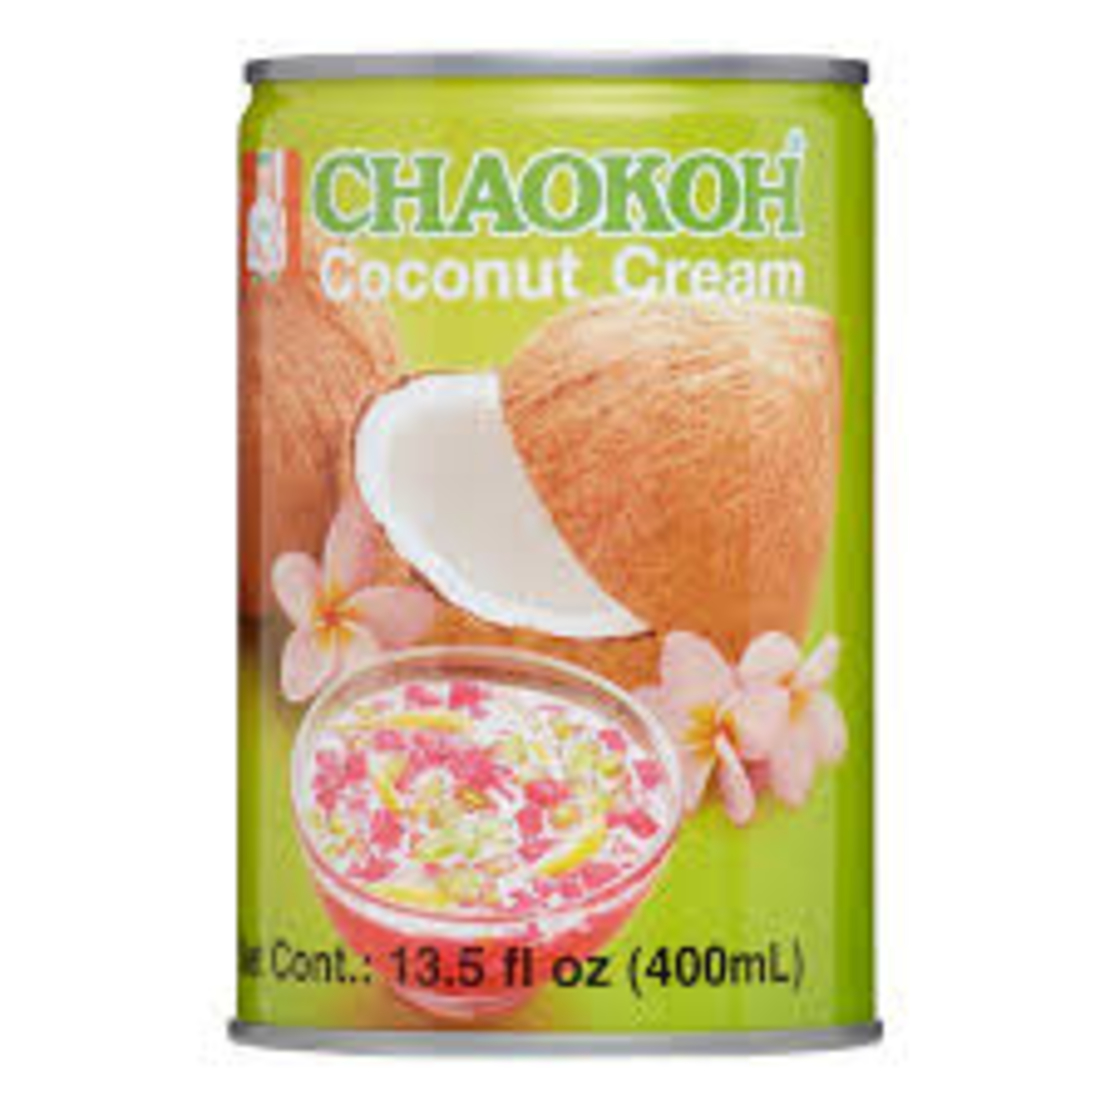  GATA Chaokoh - Coconut Cream 400ml 